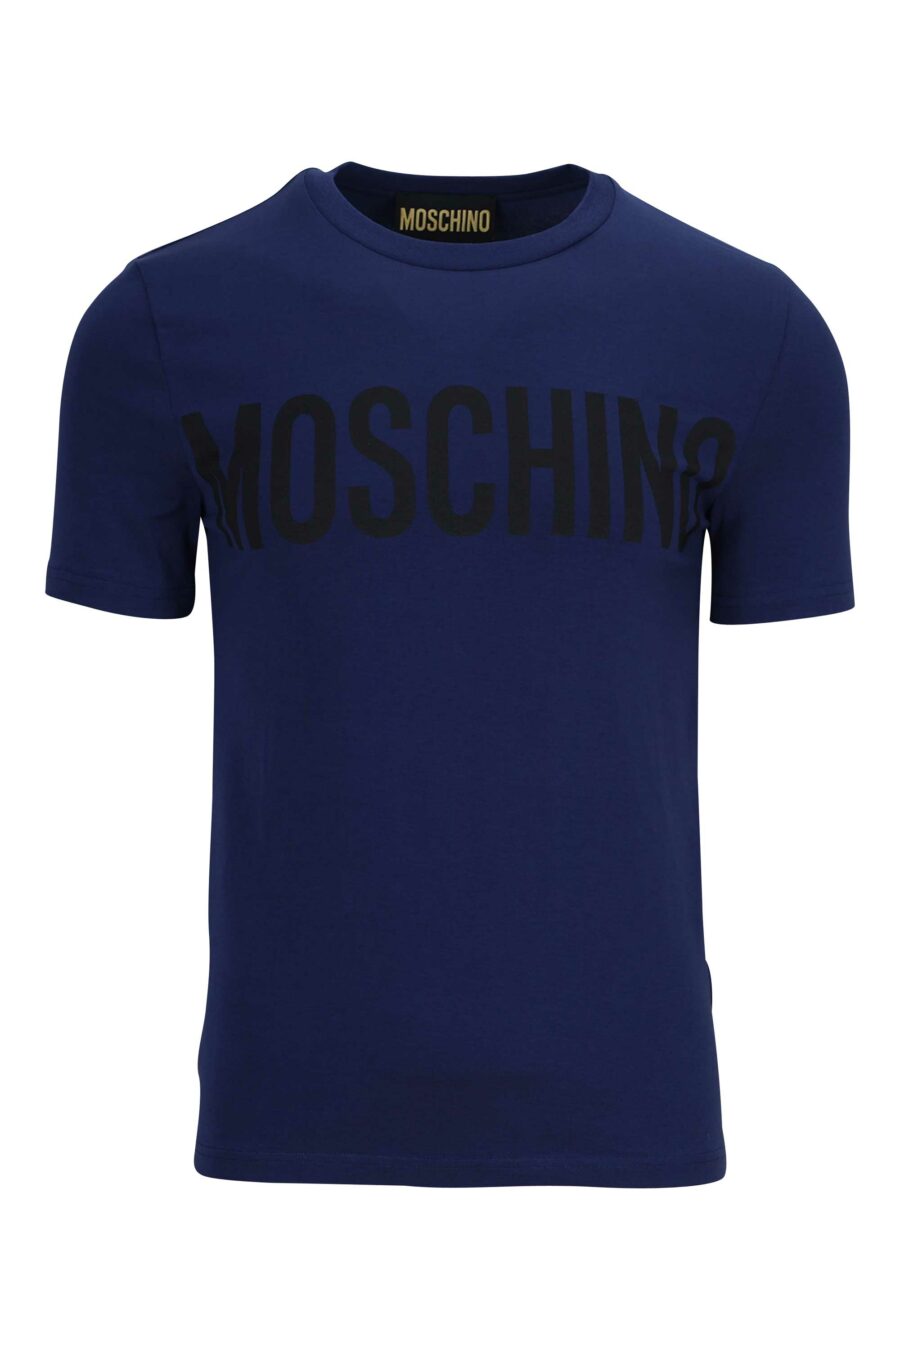 T-shirt azul-marinho com maxilogue preto - 889316649383